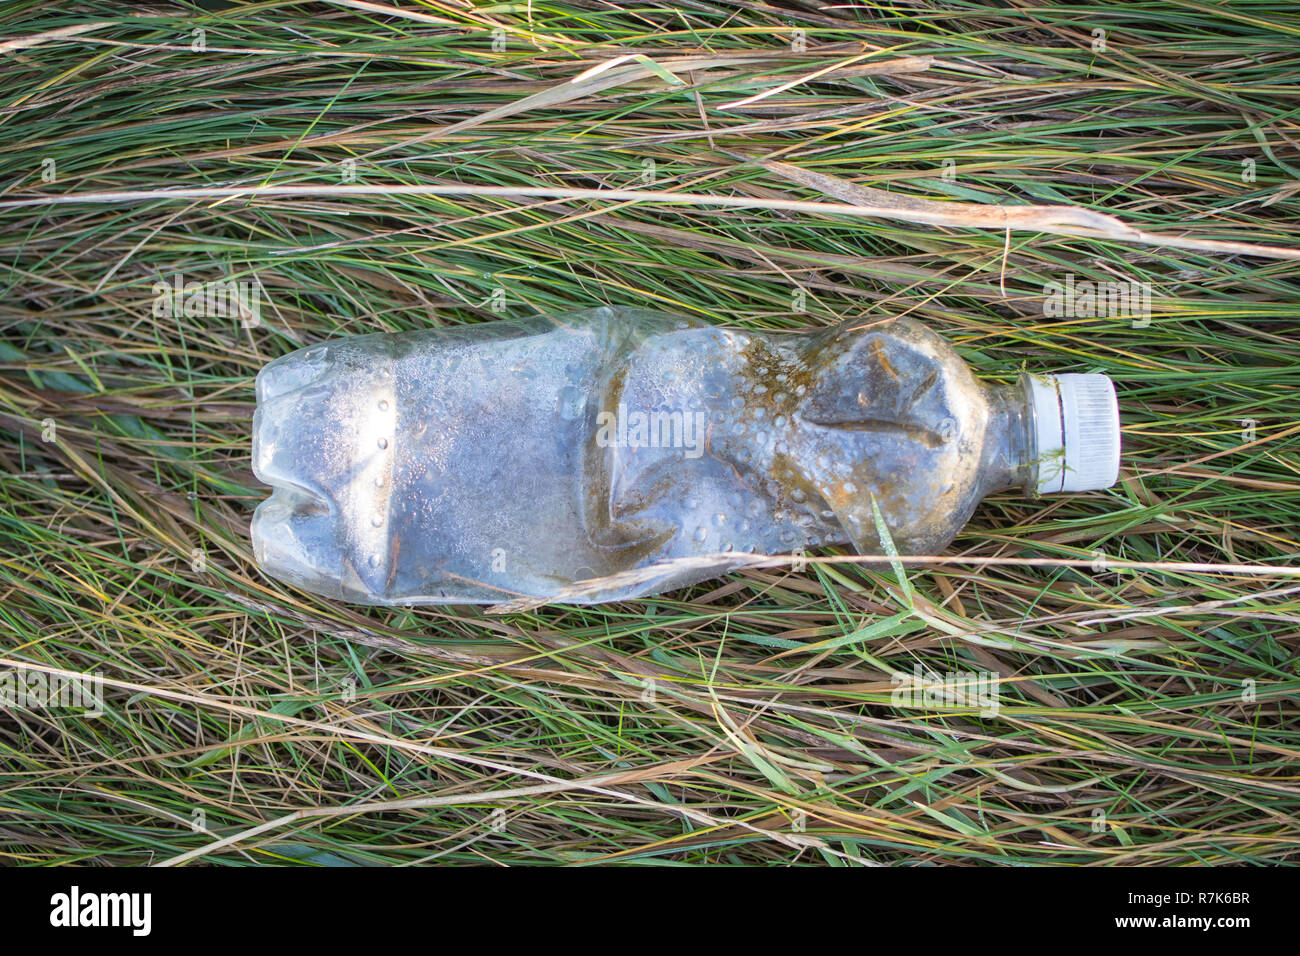 Il flacone di plastica gettato è stato trovato steso sull'erba e mostra segni di agenti atmosferici. Foto Stock